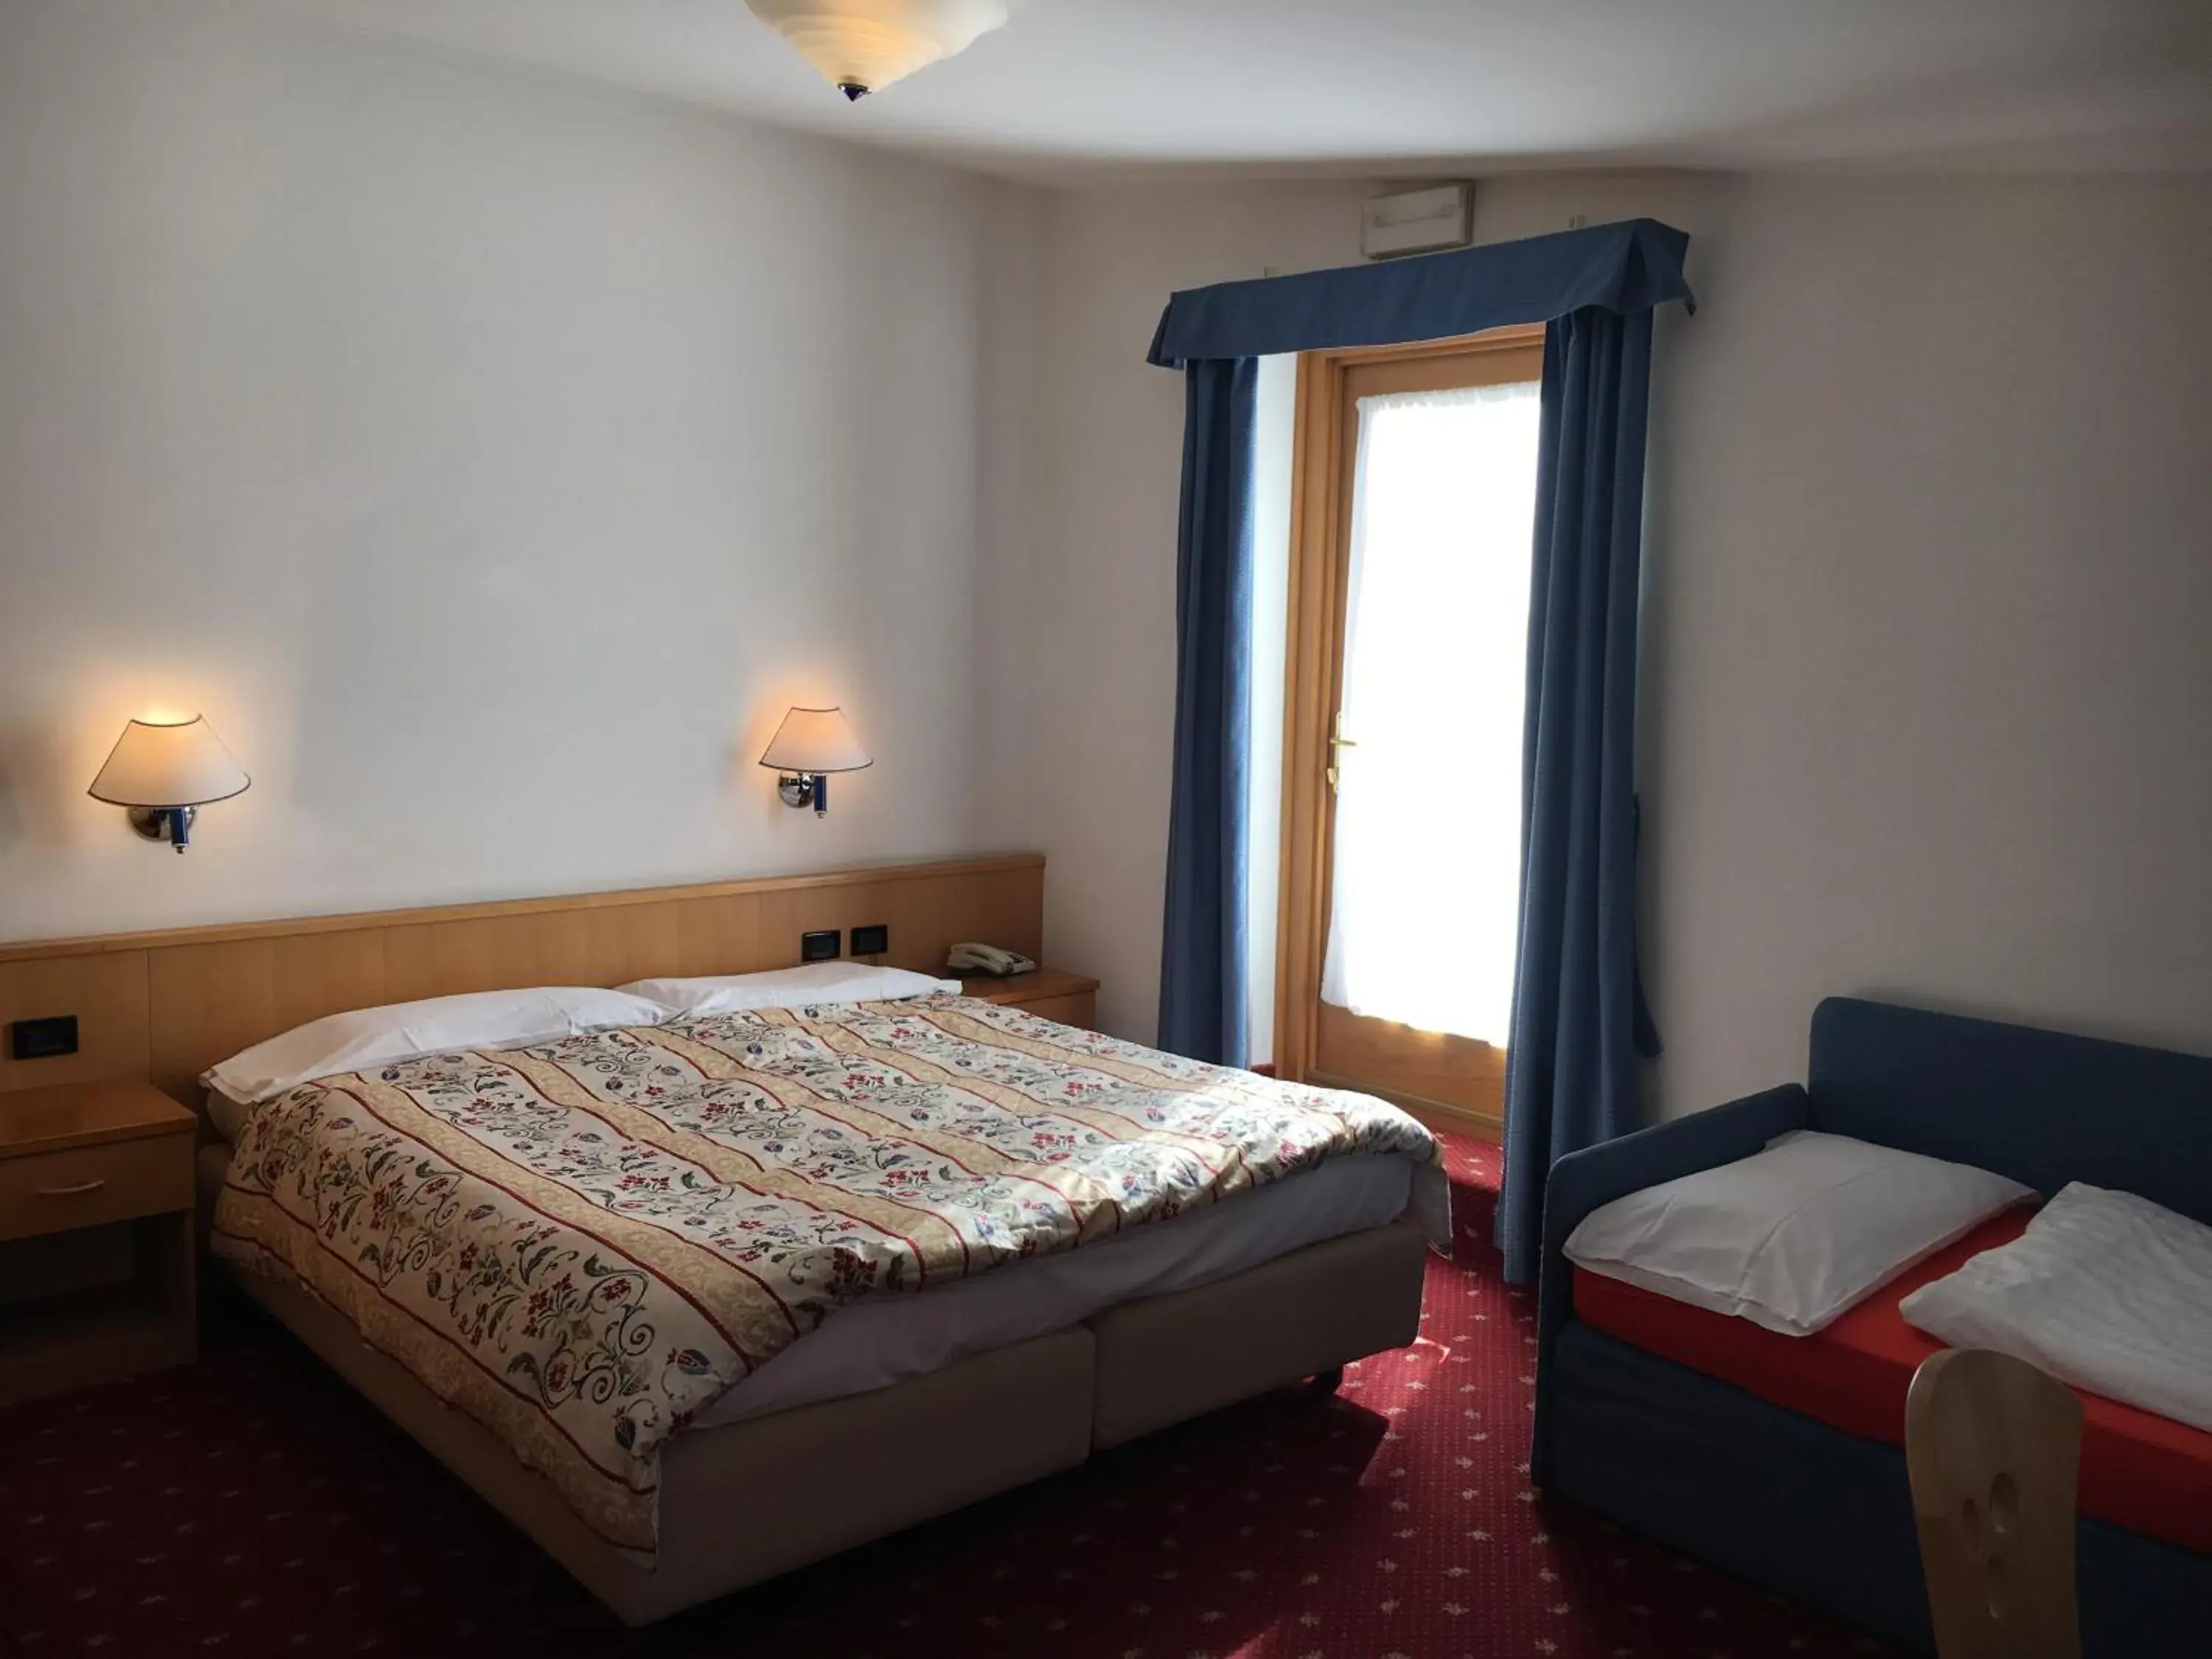 Bed, Room Photo in Garni Enrosadira